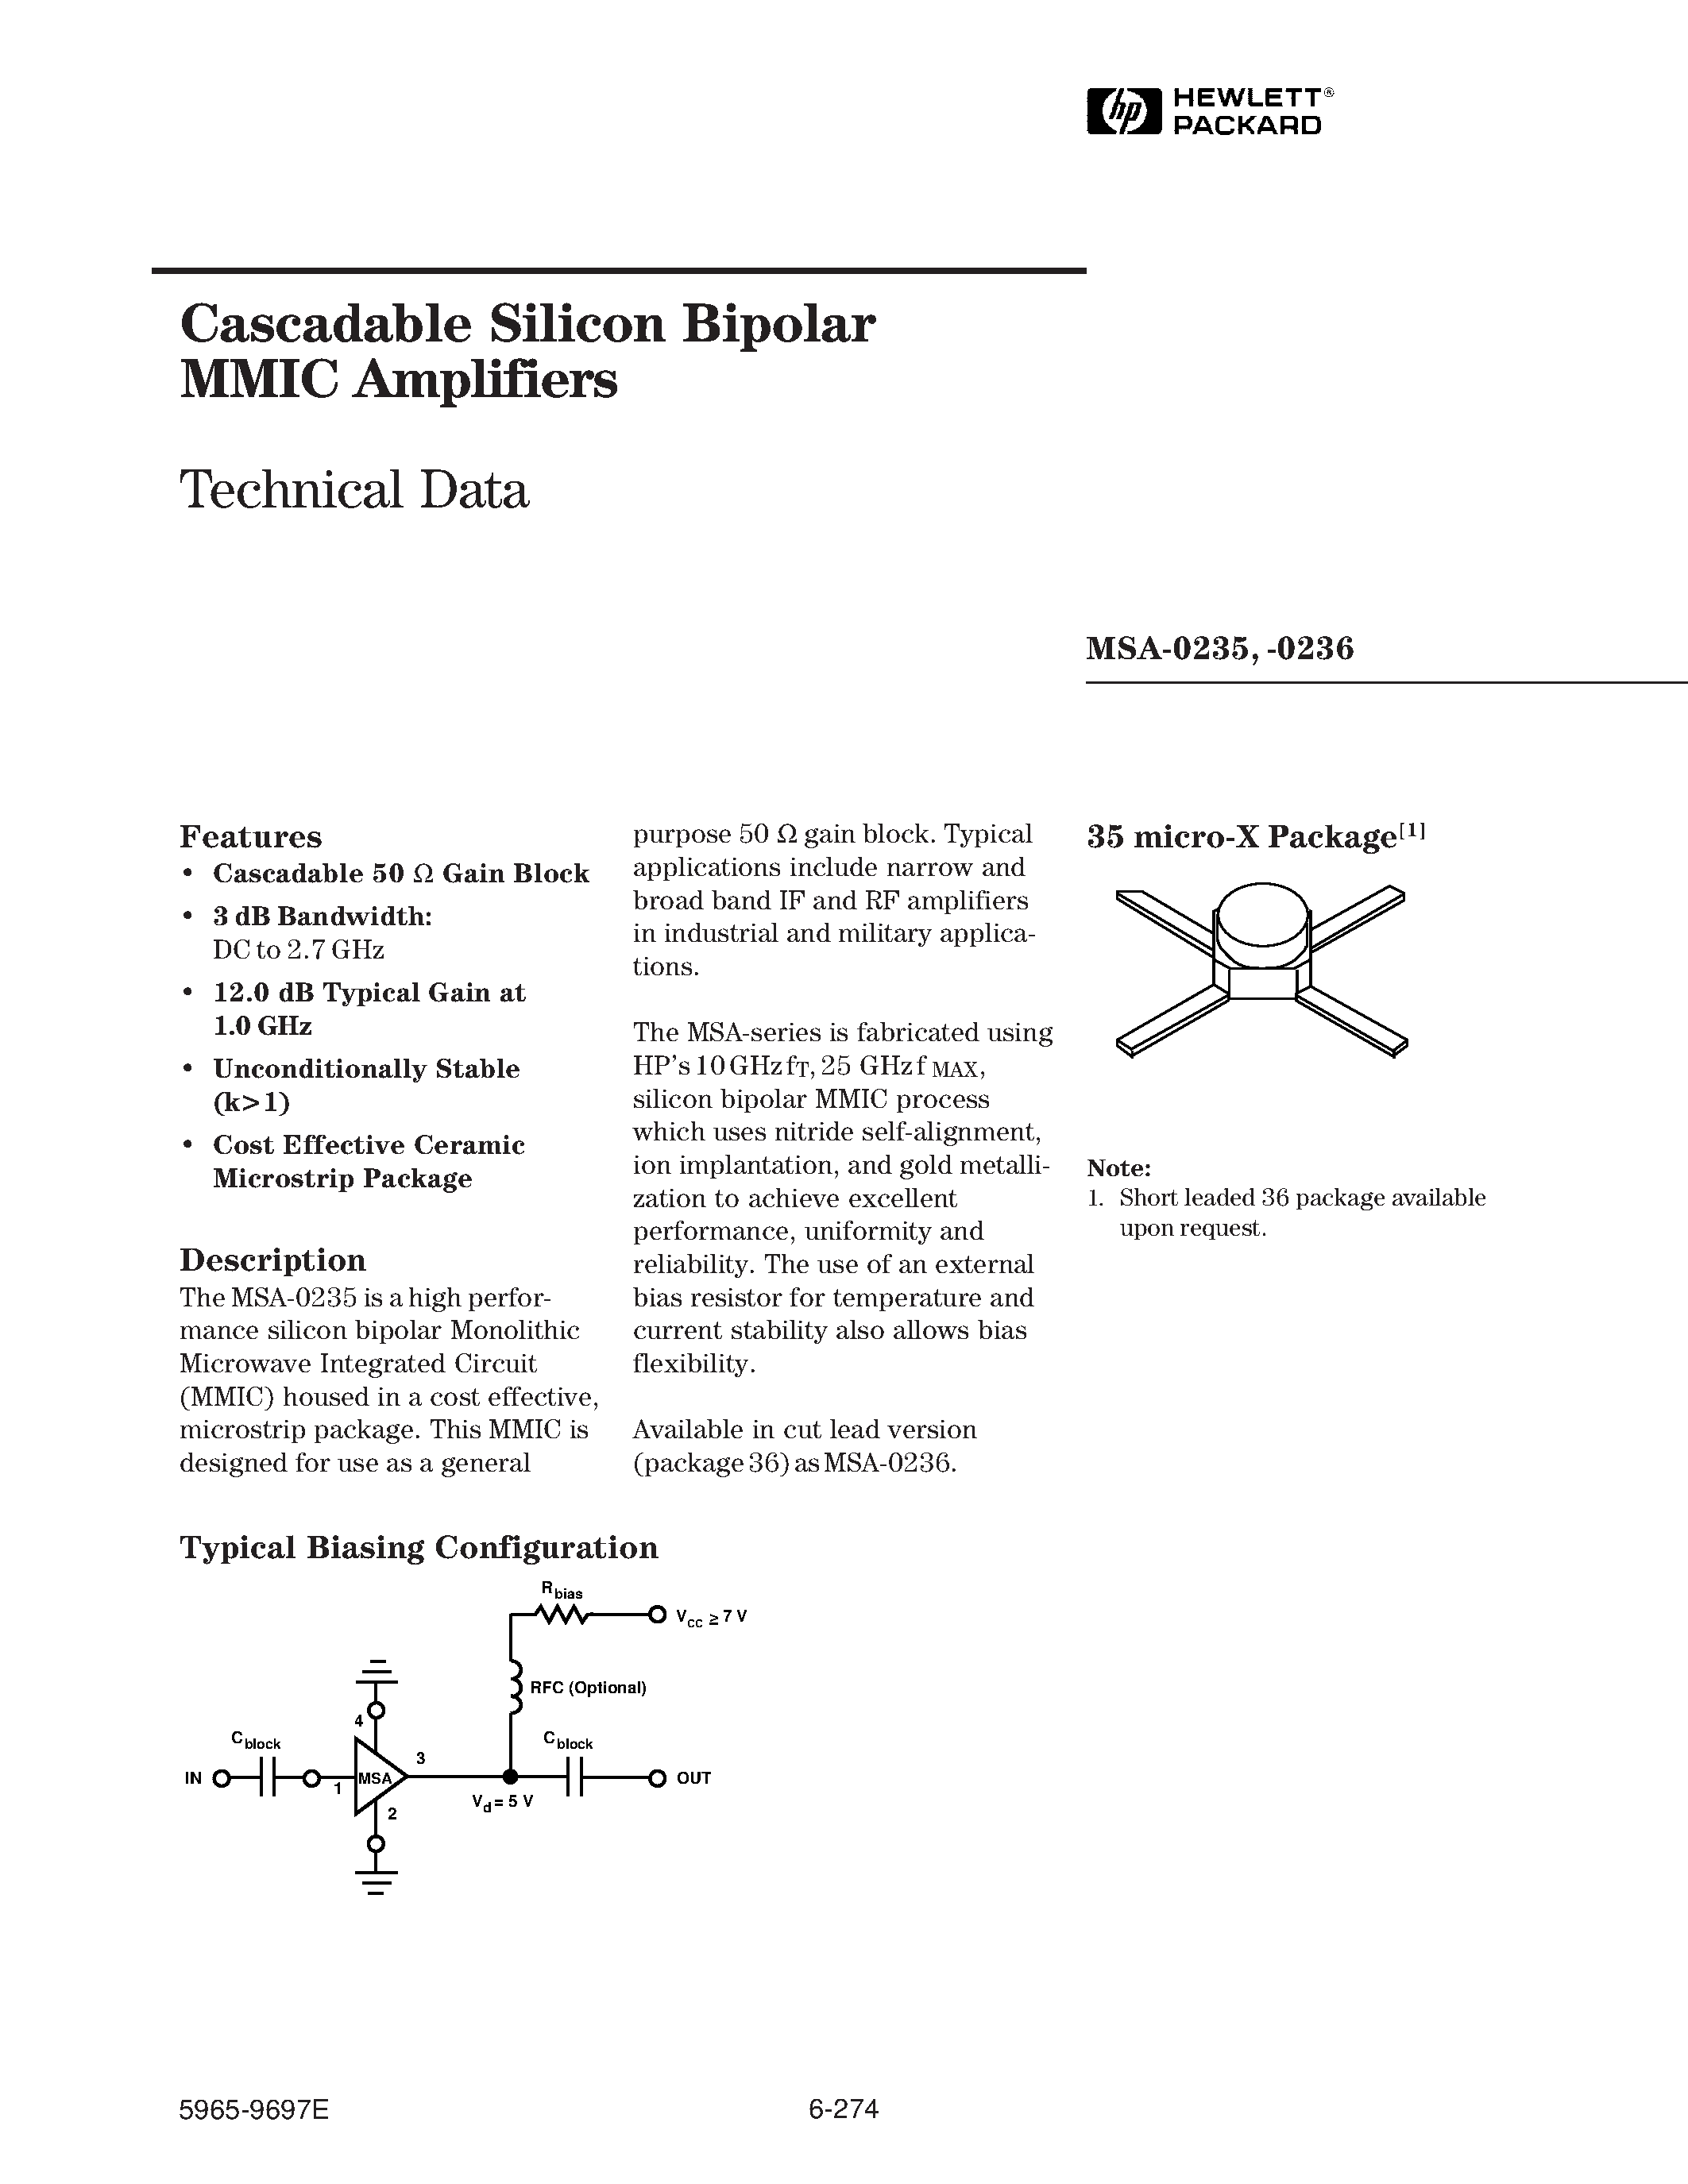 Даташит MSA-0235 - (MSA-0235 / MSA-0236) Cascadable Silicon Bipolar MMIC Amplifier страница 1